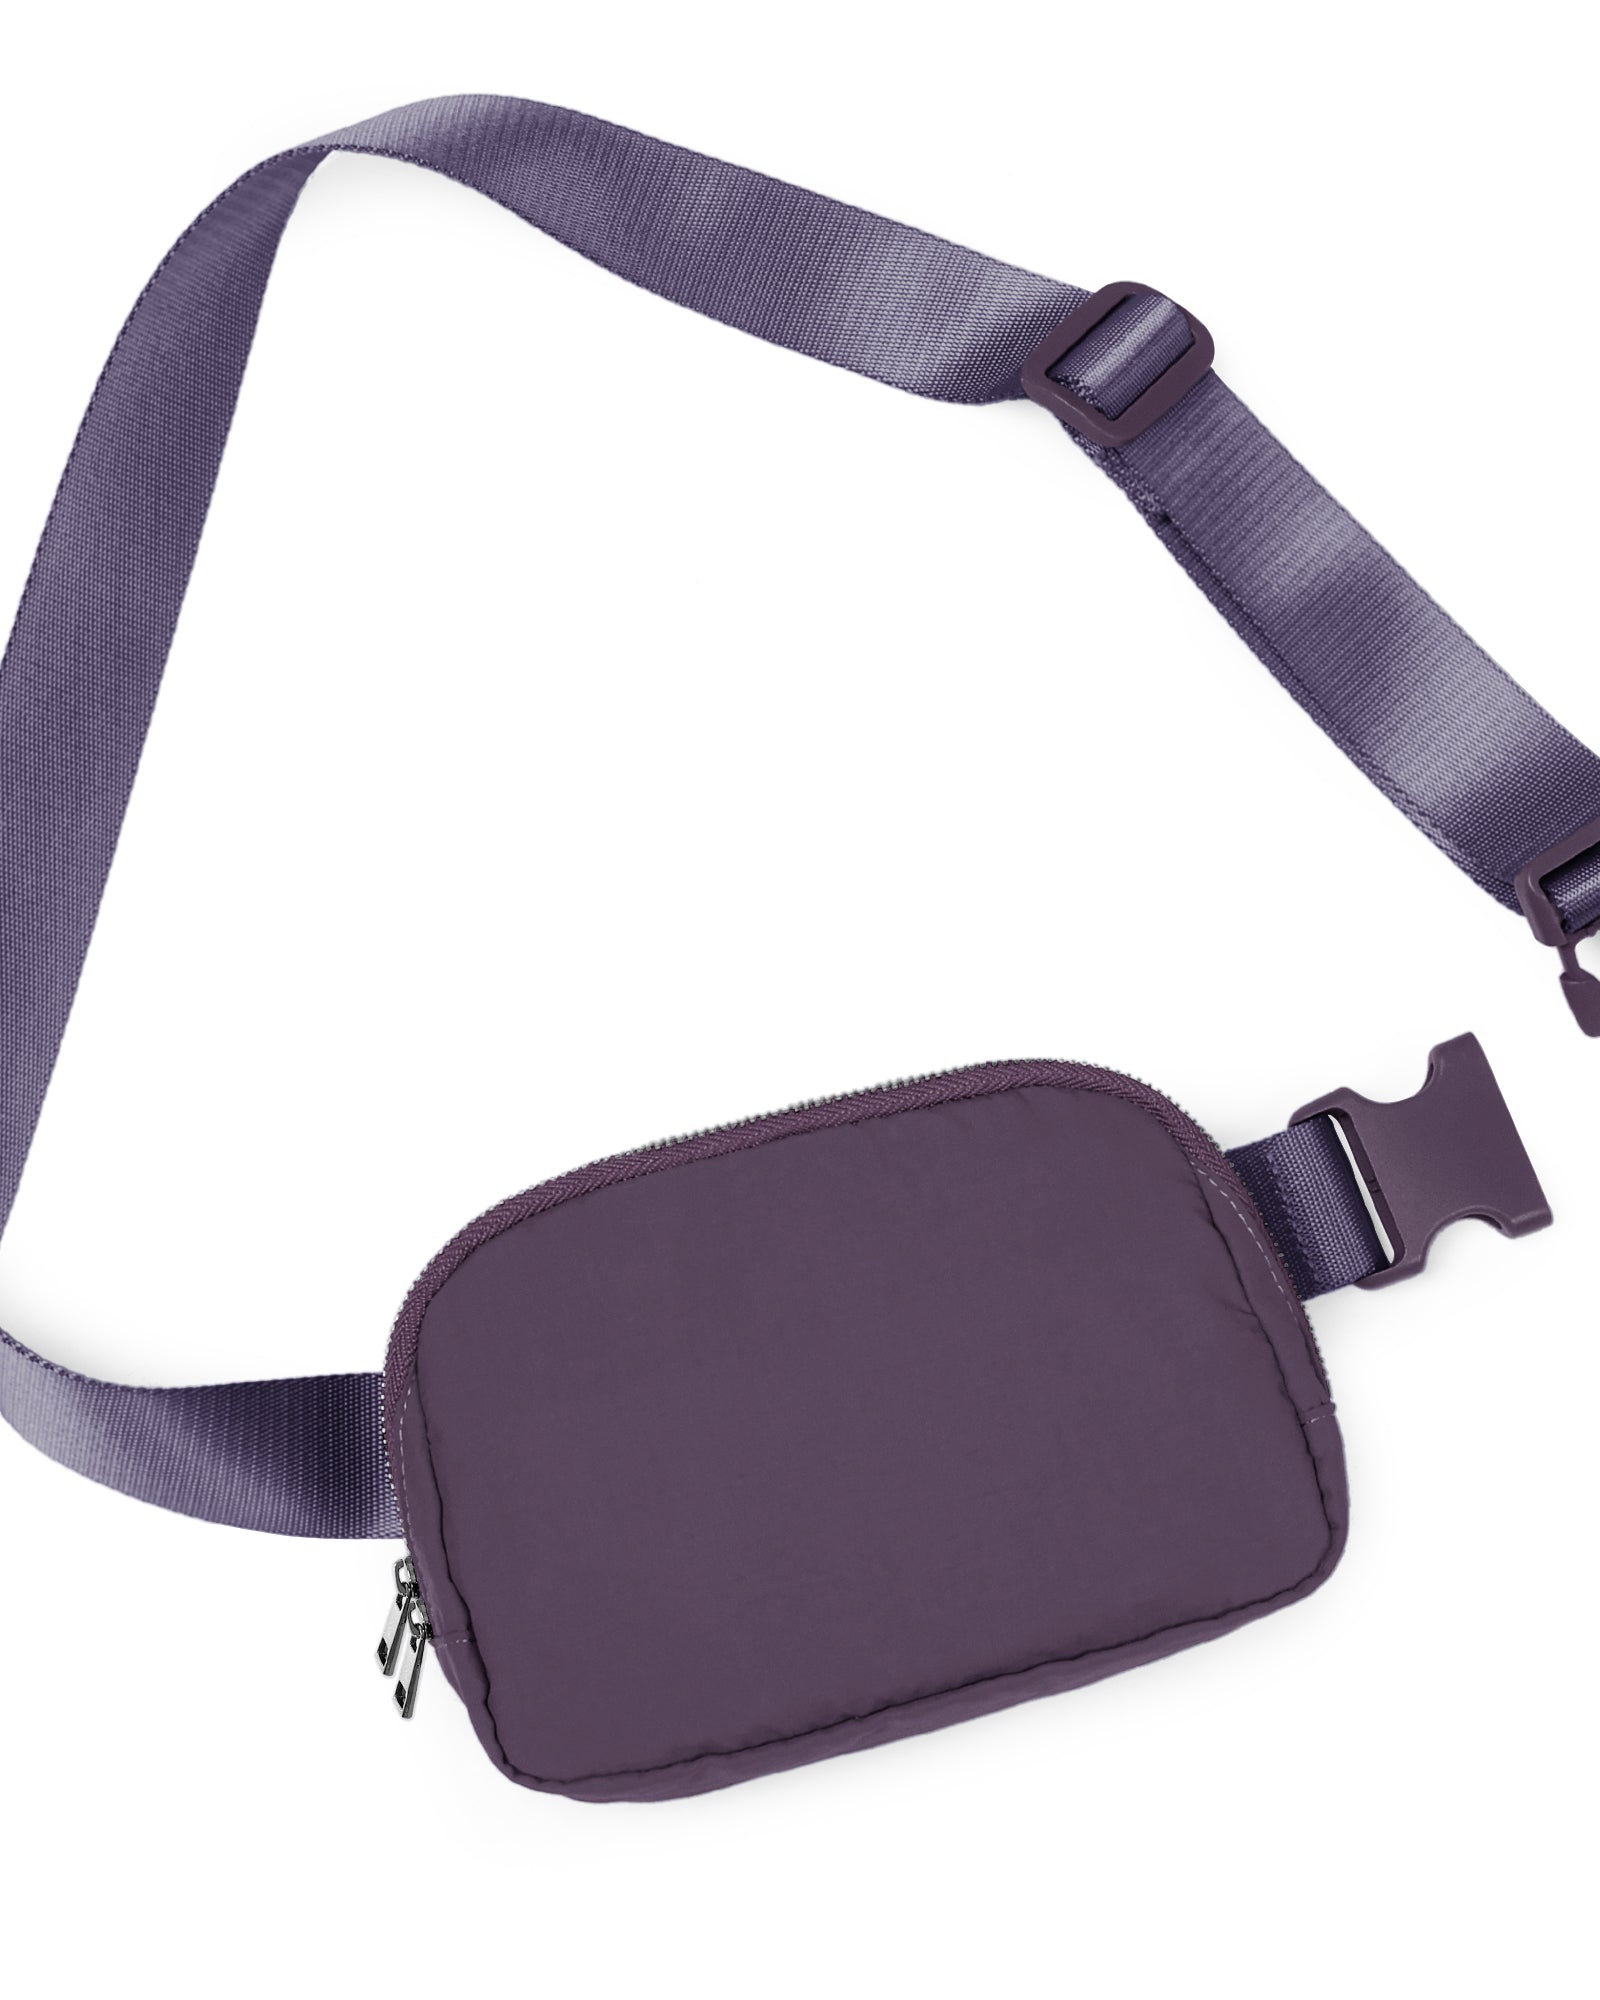 Unisex Two-Way Zip Mini Belt Bag Plum 8" x 2" x 5.5" - ododos